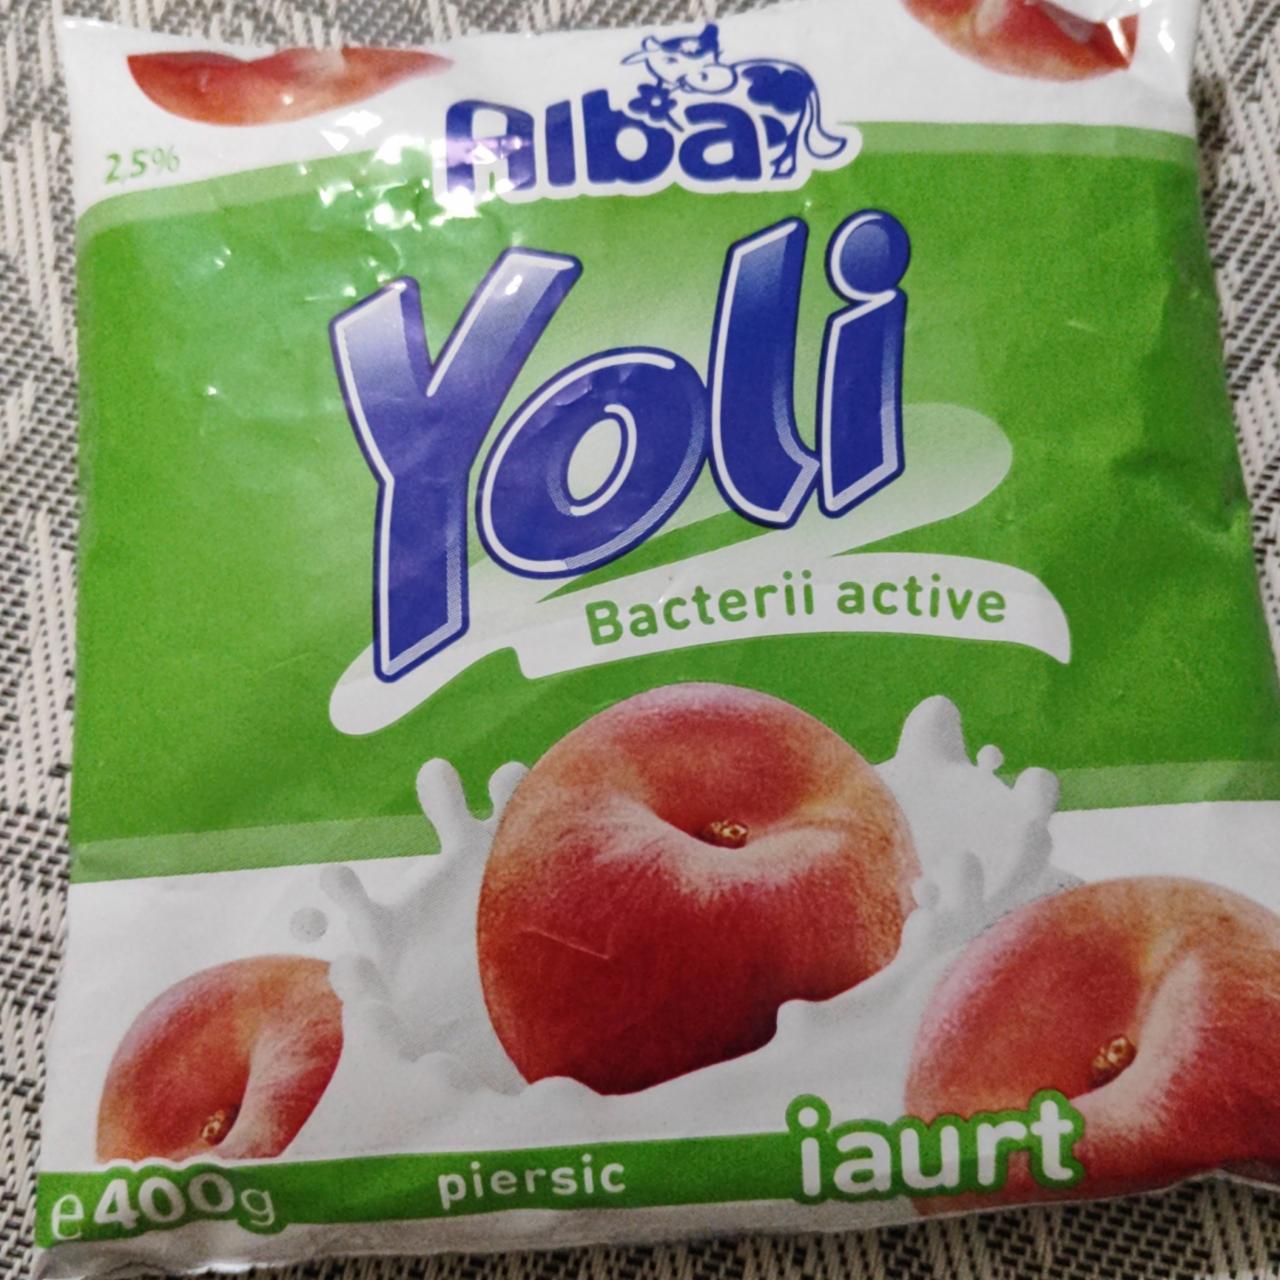 Фото - йогурт питьевой персиковый persic Yoli Alba